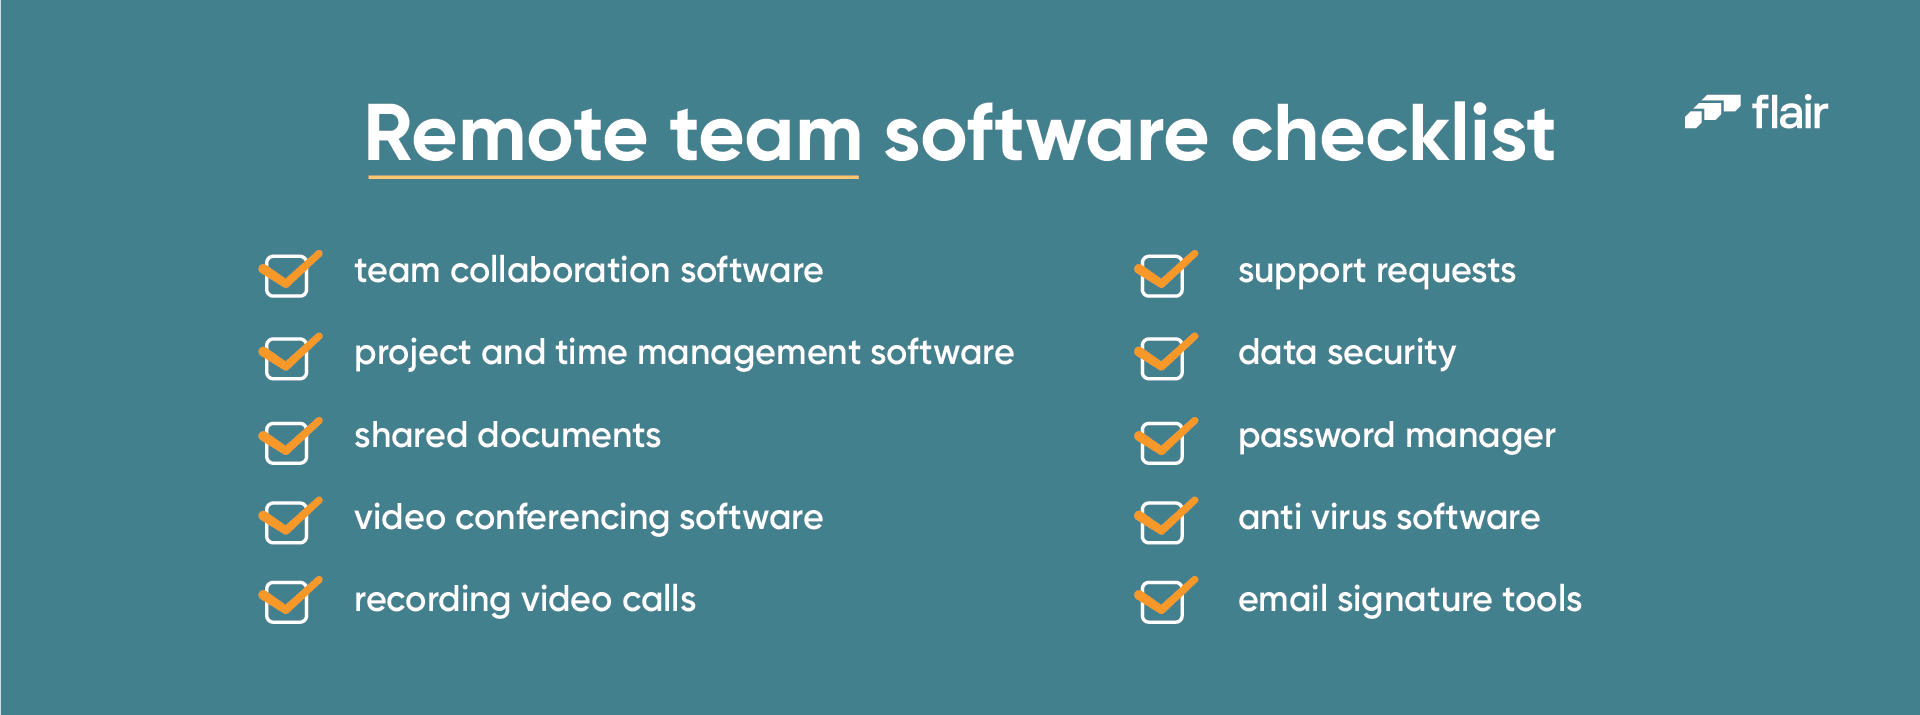 remote team software checklist